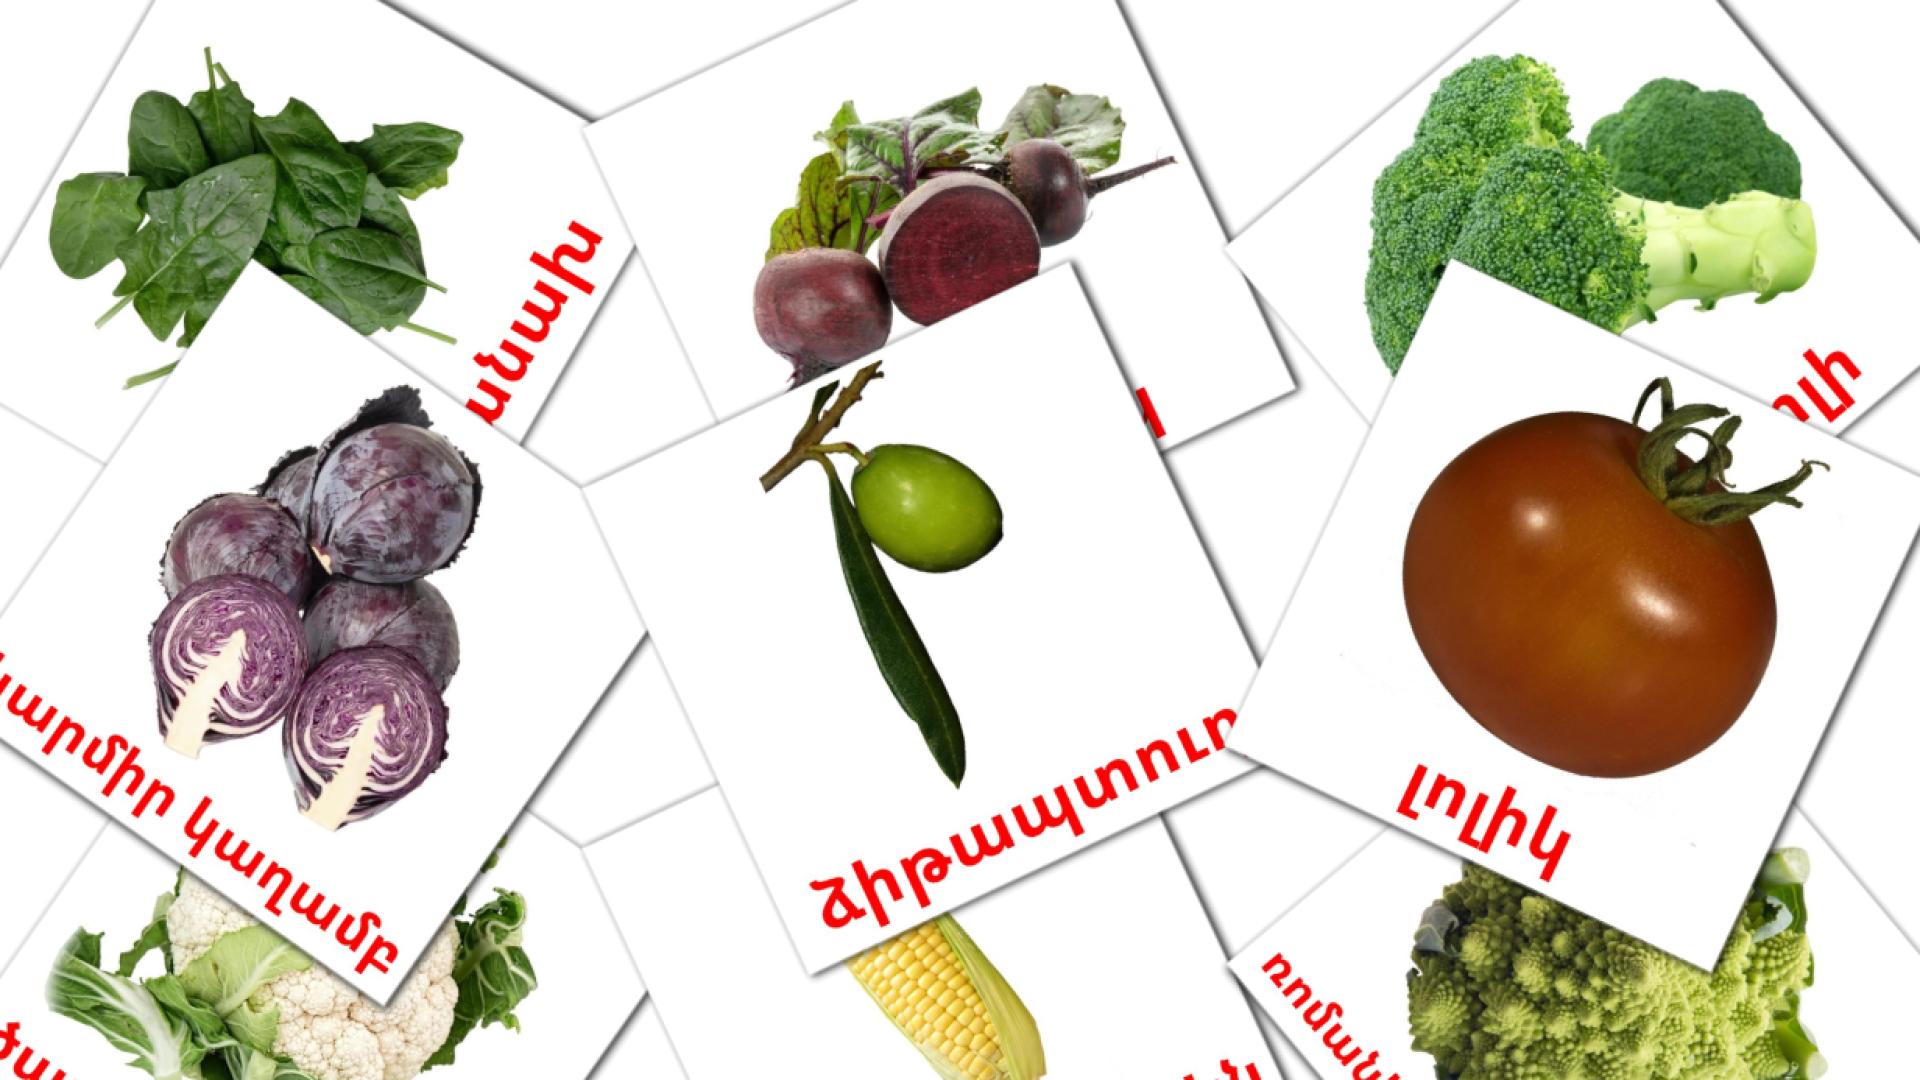 Groenten - armeensee woordenschatkaarten